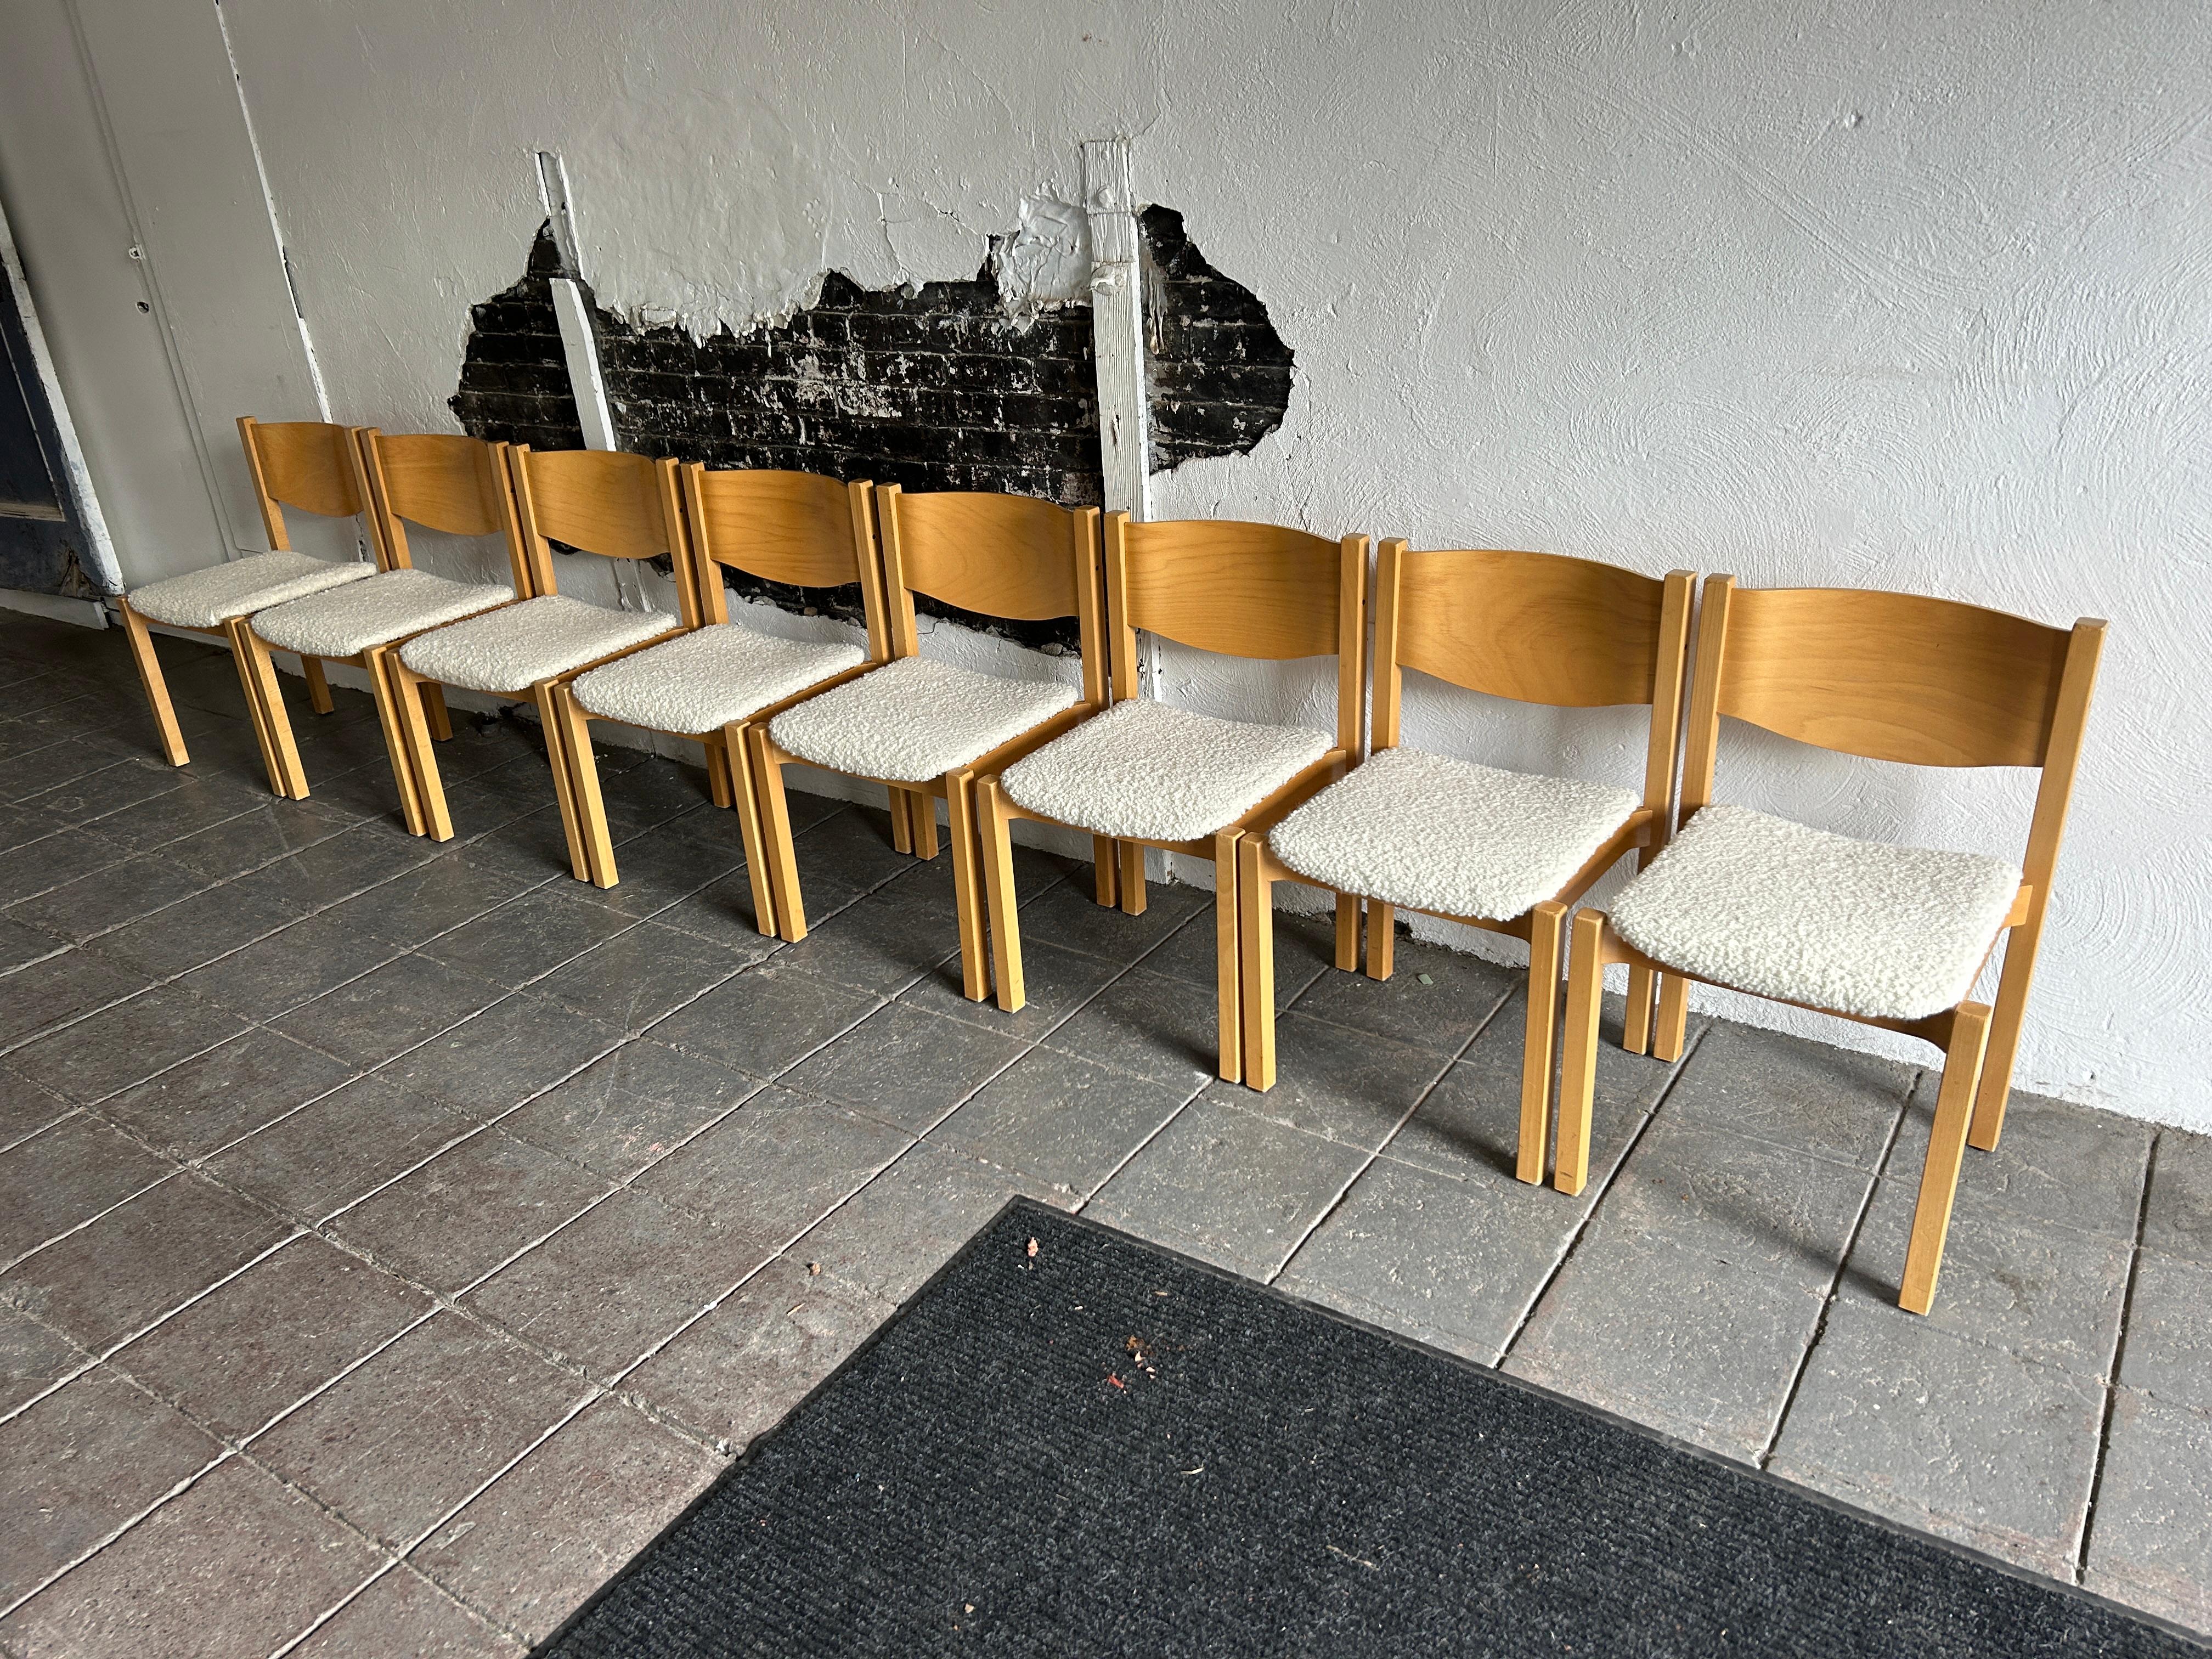 Satz von 8 Stühlen aus moderner skandinavischer Birke mit Boucle-Polsterung.

Verkauft als Satz von 8 Stühlen 